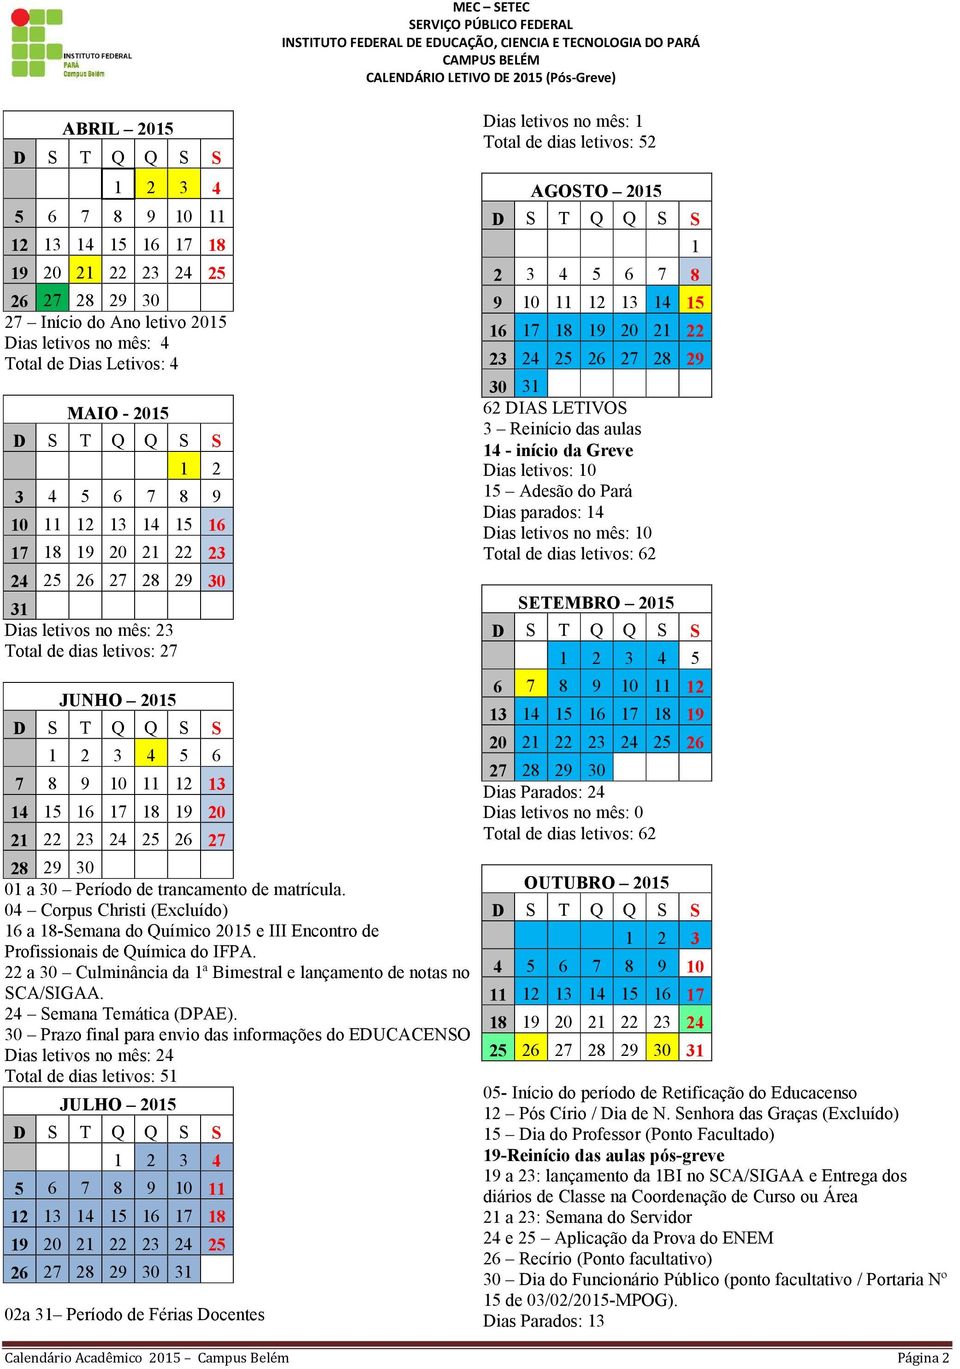 04 Corpus Christi (Excluído) 16 a 18-Semana do Químico 2015 e III Encontro de Profissionais de Química do IFPA. 22 a 30 Culminância da 1ª Bimestral e lançamento de notas no SCA/SIGAA.